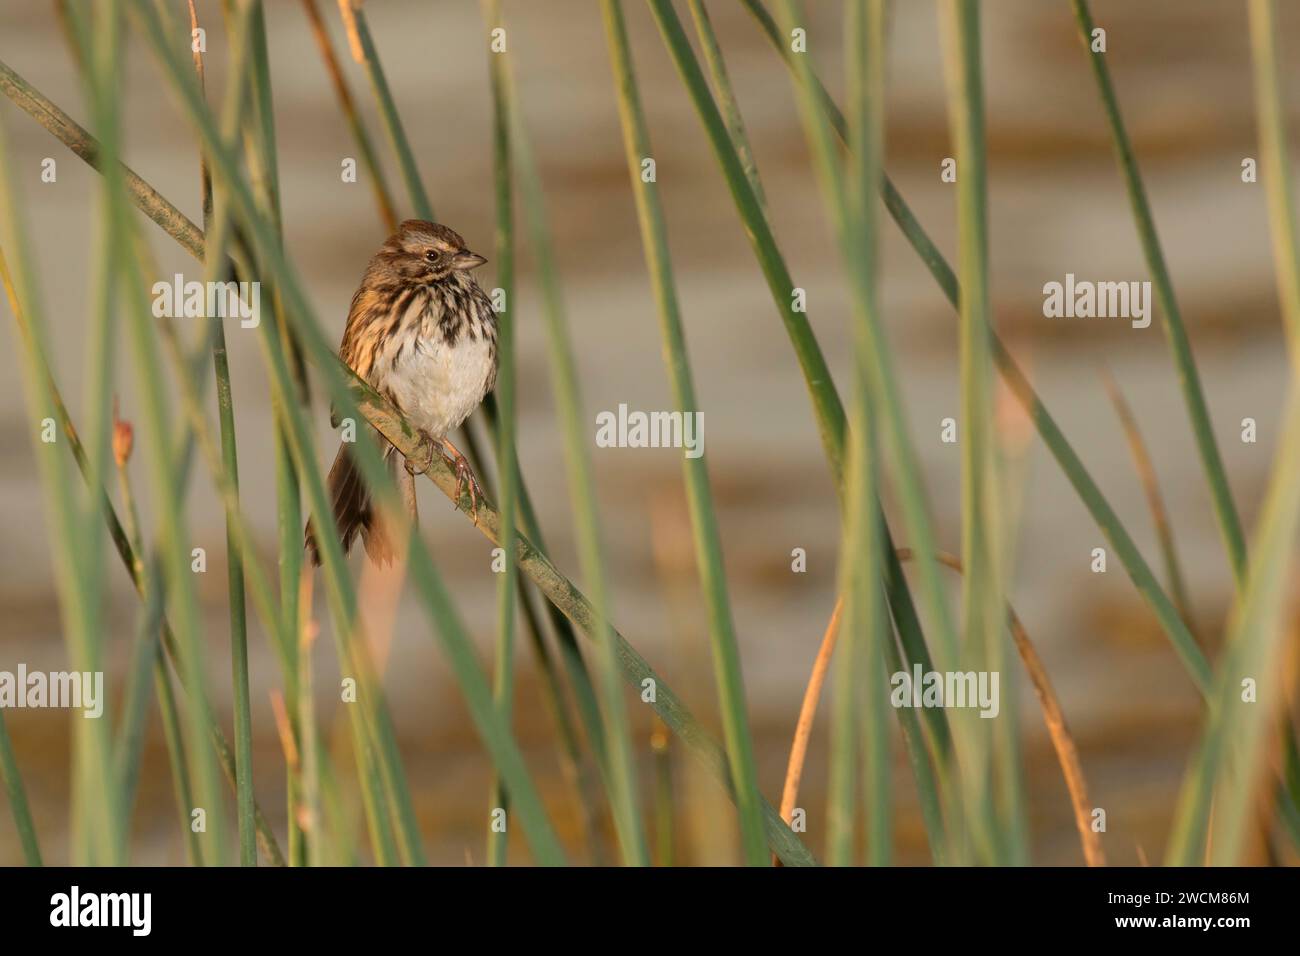 Sparrow in bulrush, Cosumnes River Preserve, California Stock Photo